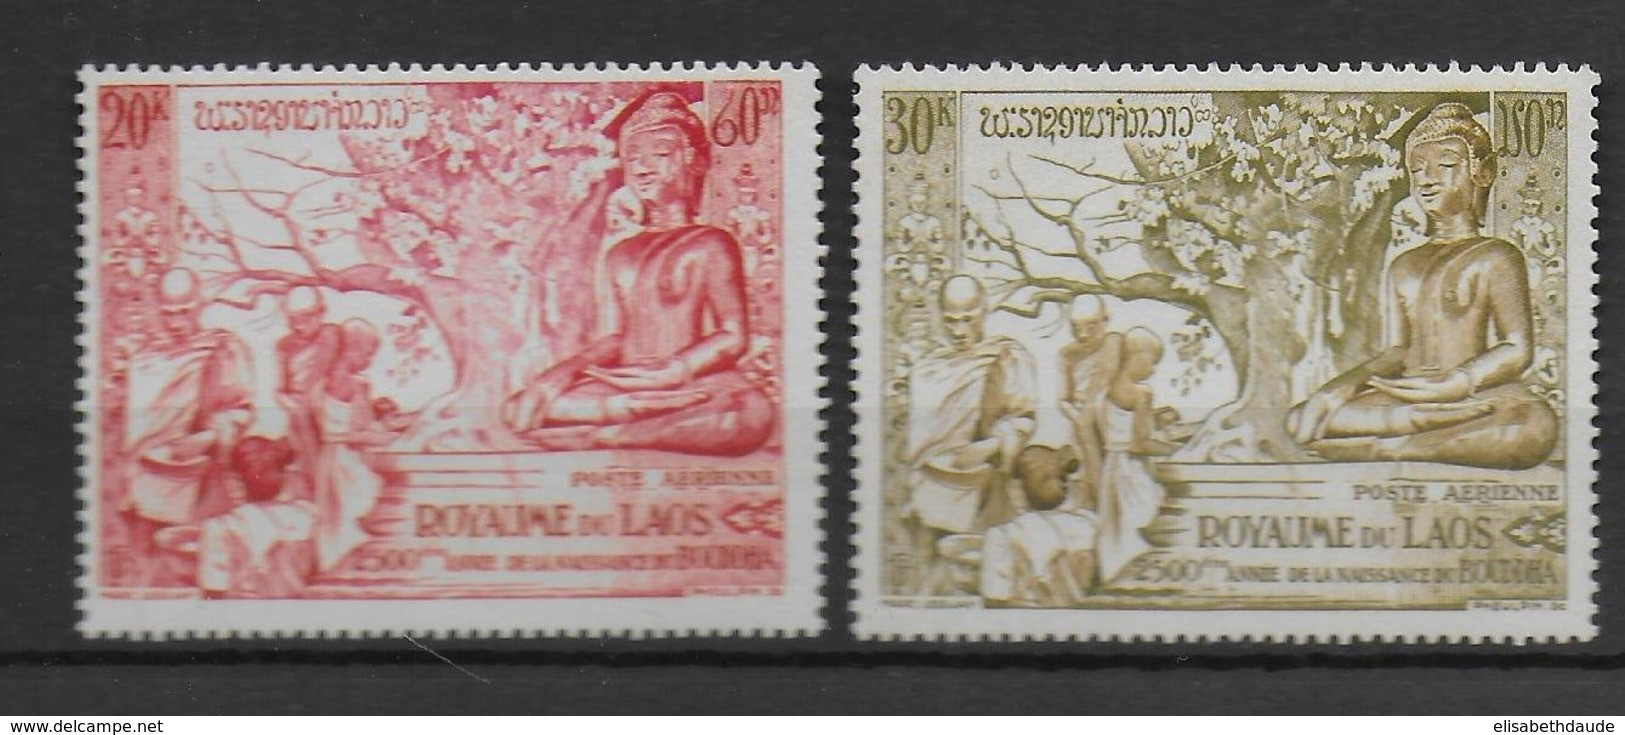 LAOS - 1956 - AERIENS SERIE COMPLETE YVERT 20/21 * MLH  - COTE 2006 ! = 83 EUR. - Laos